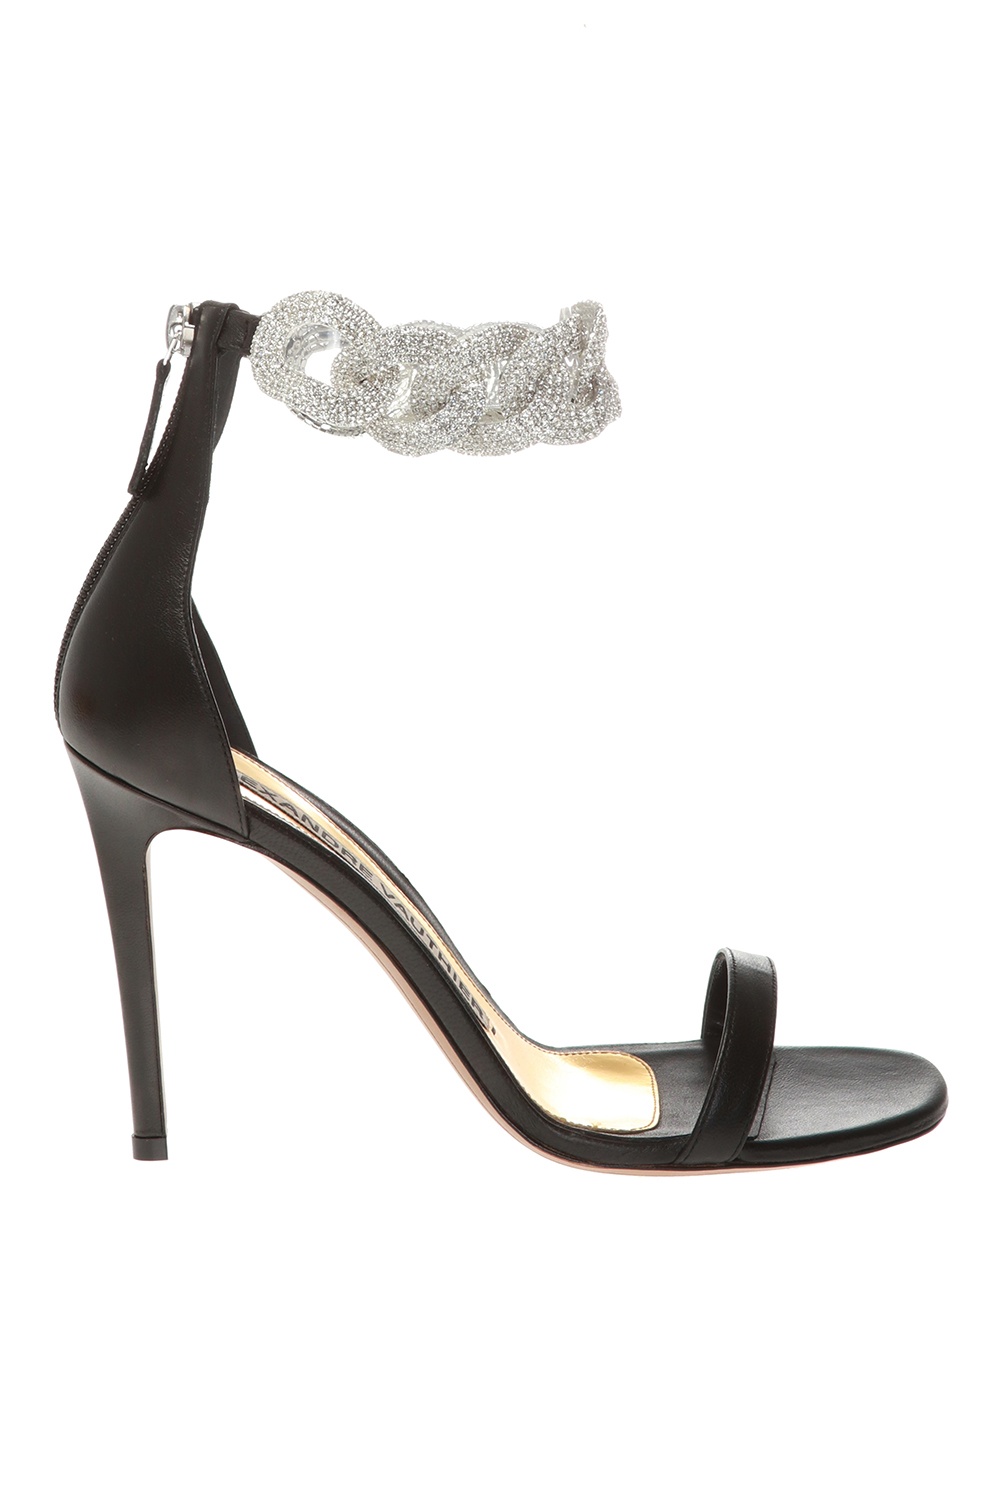 Alexandre Vauthier ‘Elsa’ Oxford sandals